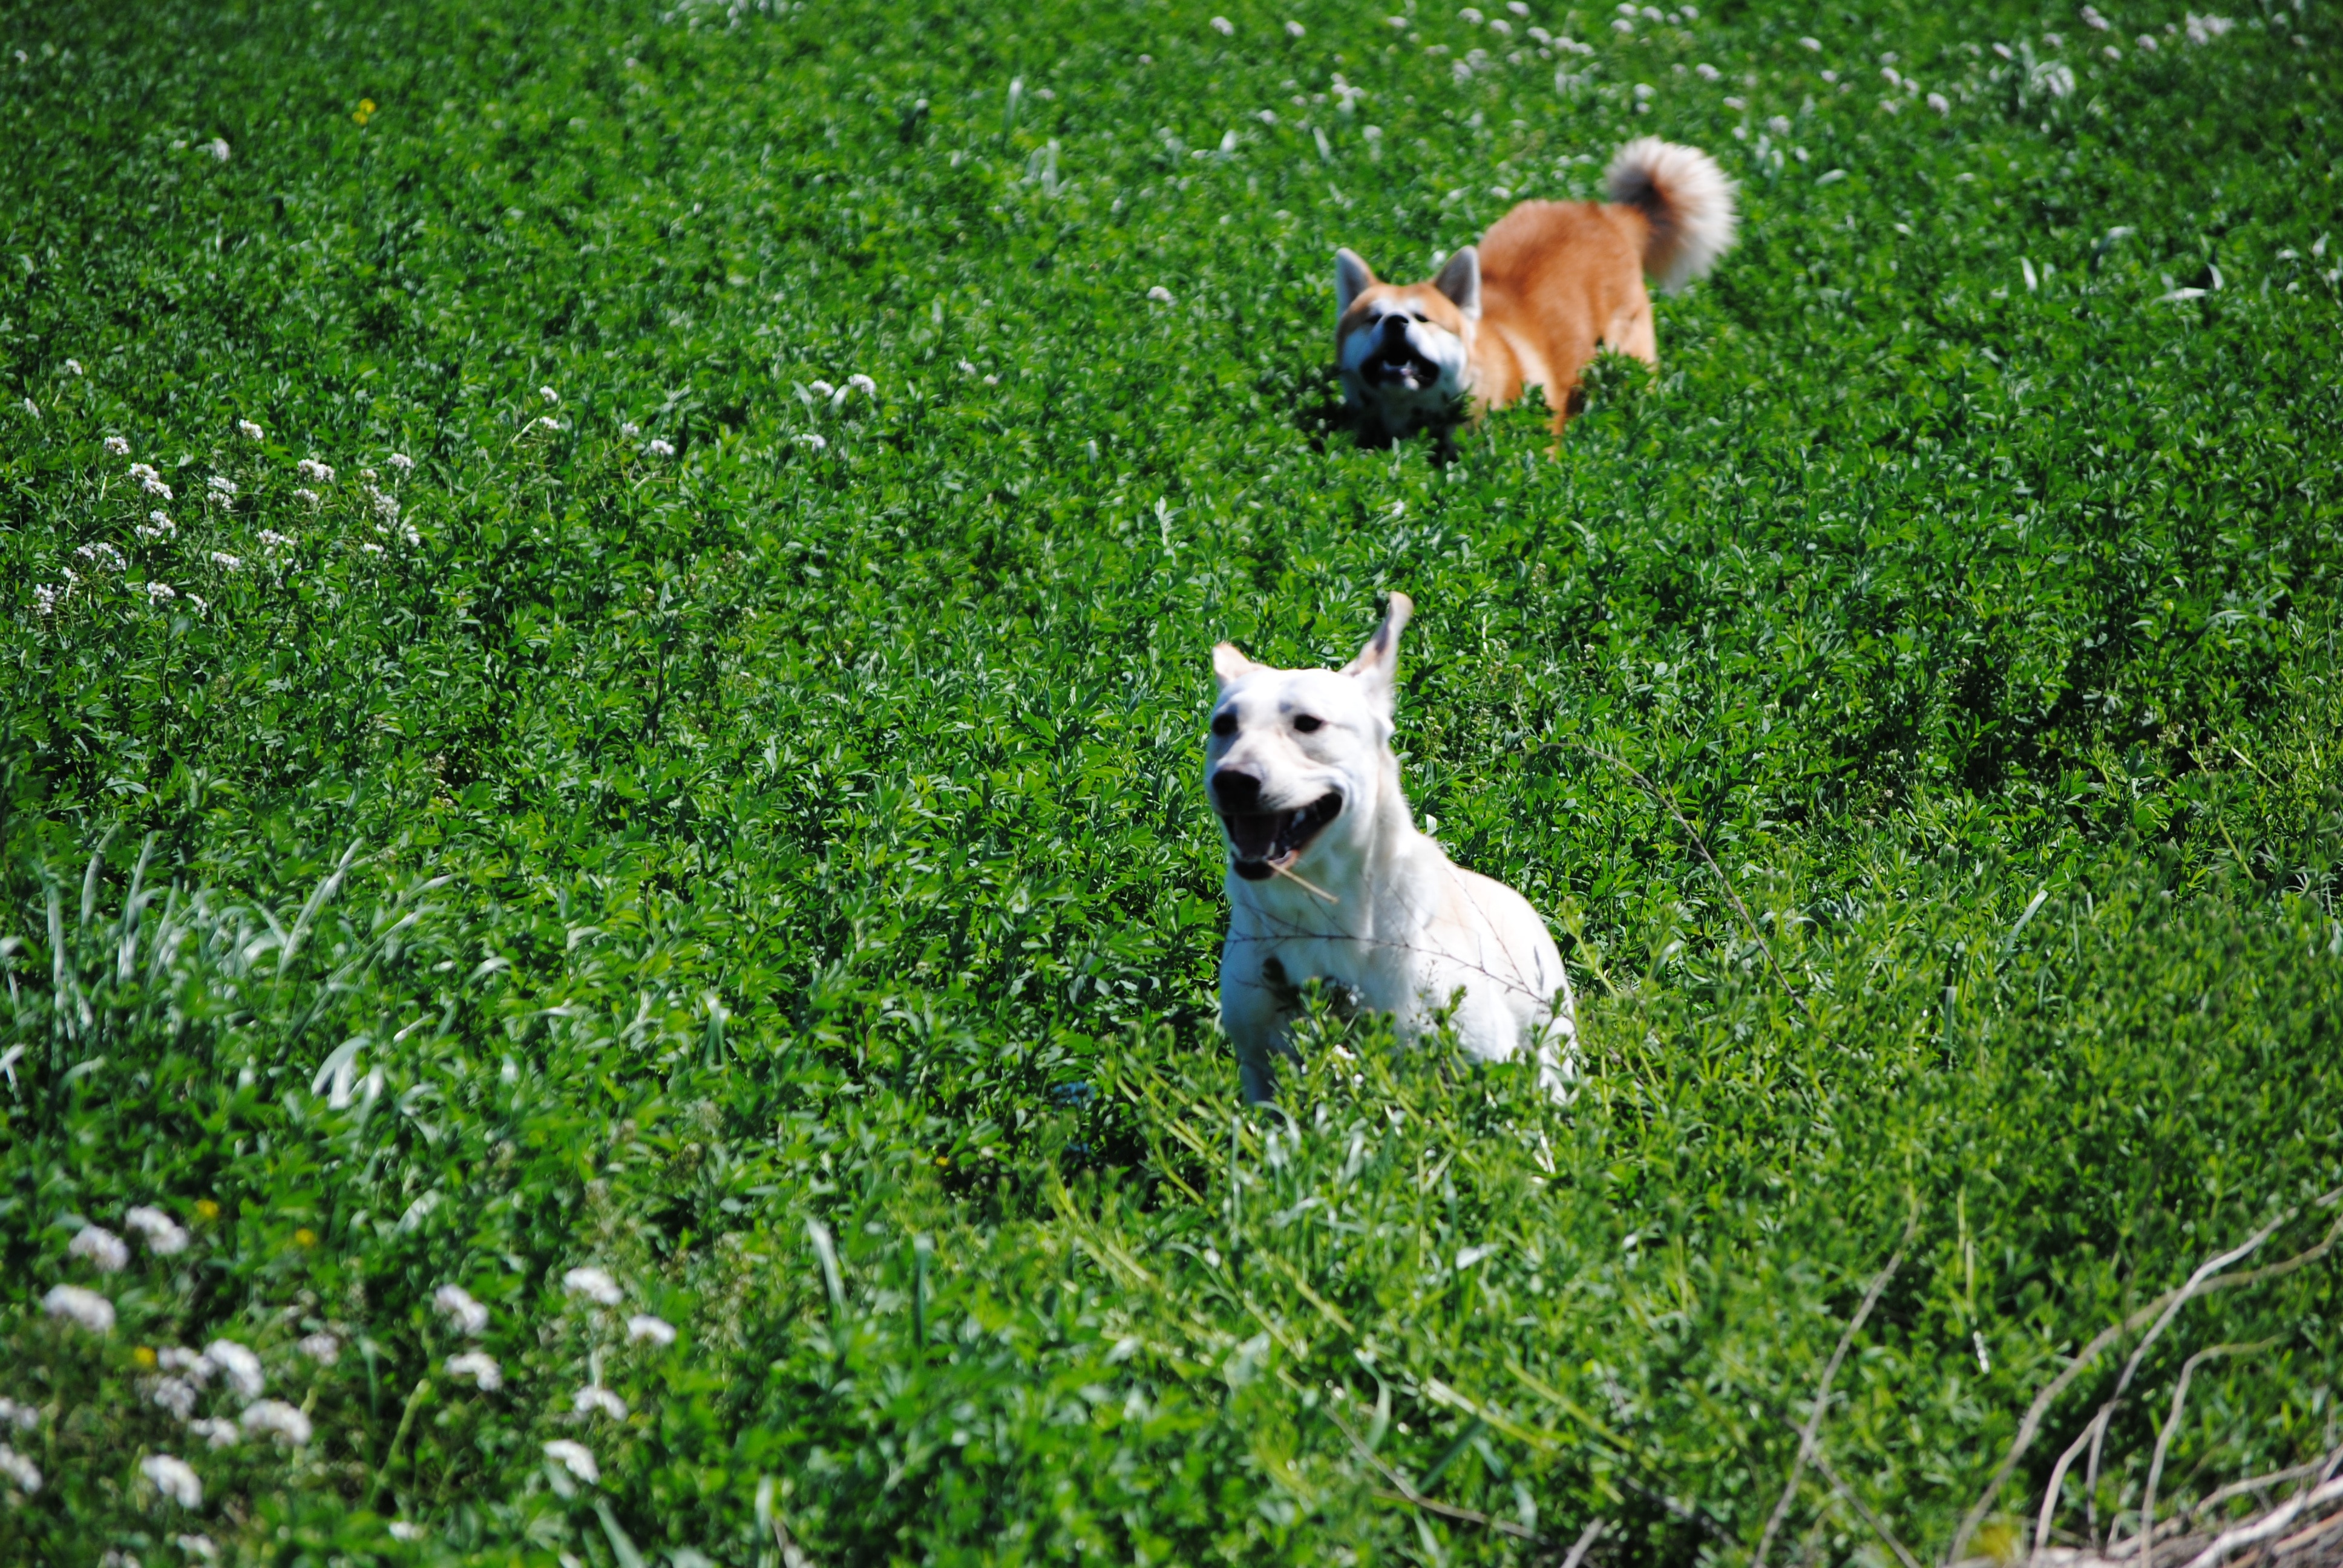 white short coat dog on green grass during daytime